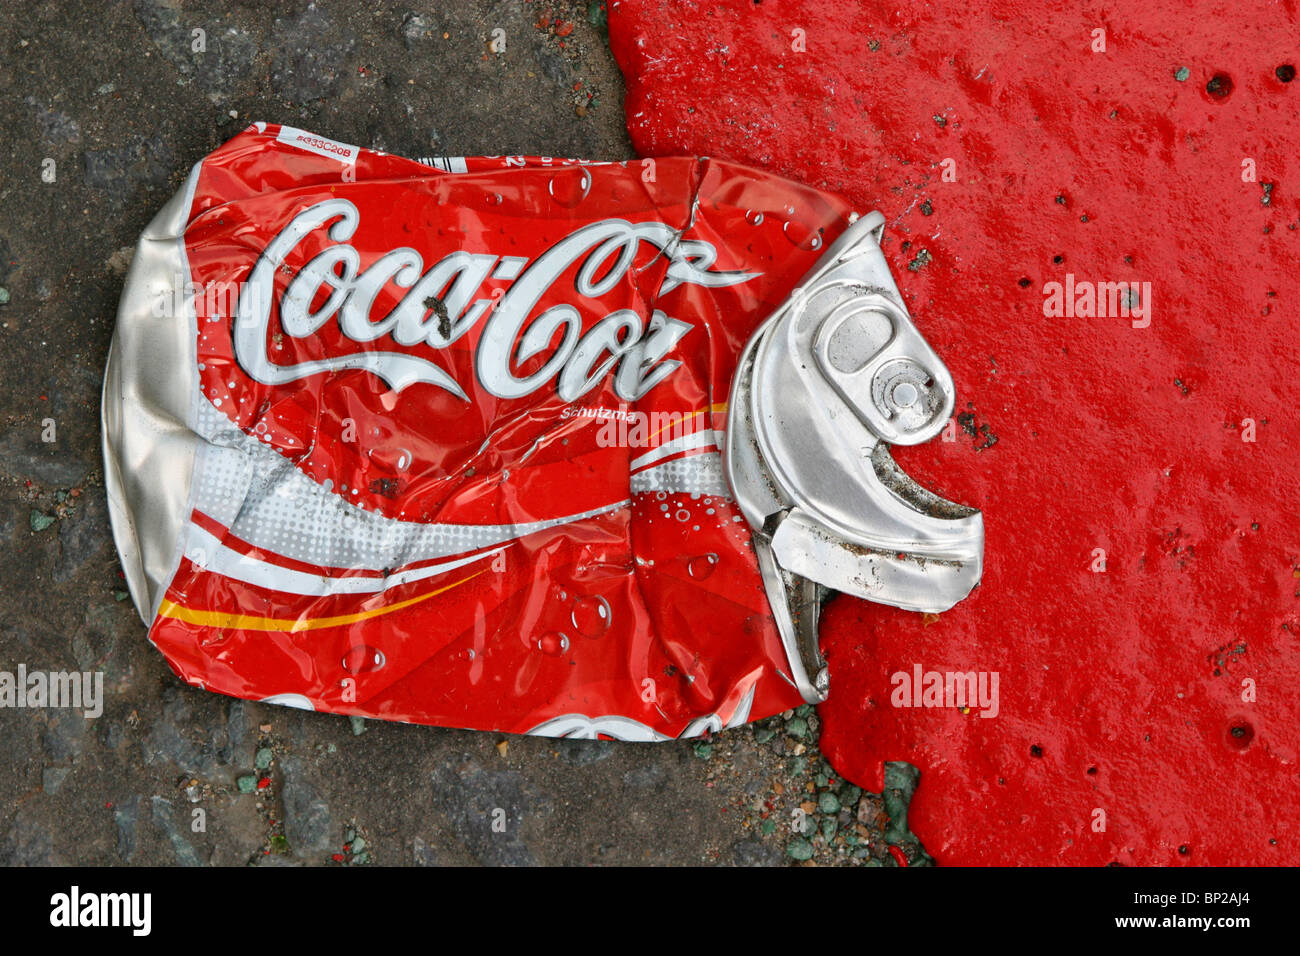 Eine Cola kann abgeflacht, in der Straße neben einem roten Route Straße Kennzeichnung in leuchtend rote Farbe, London, UK. Stockfoto